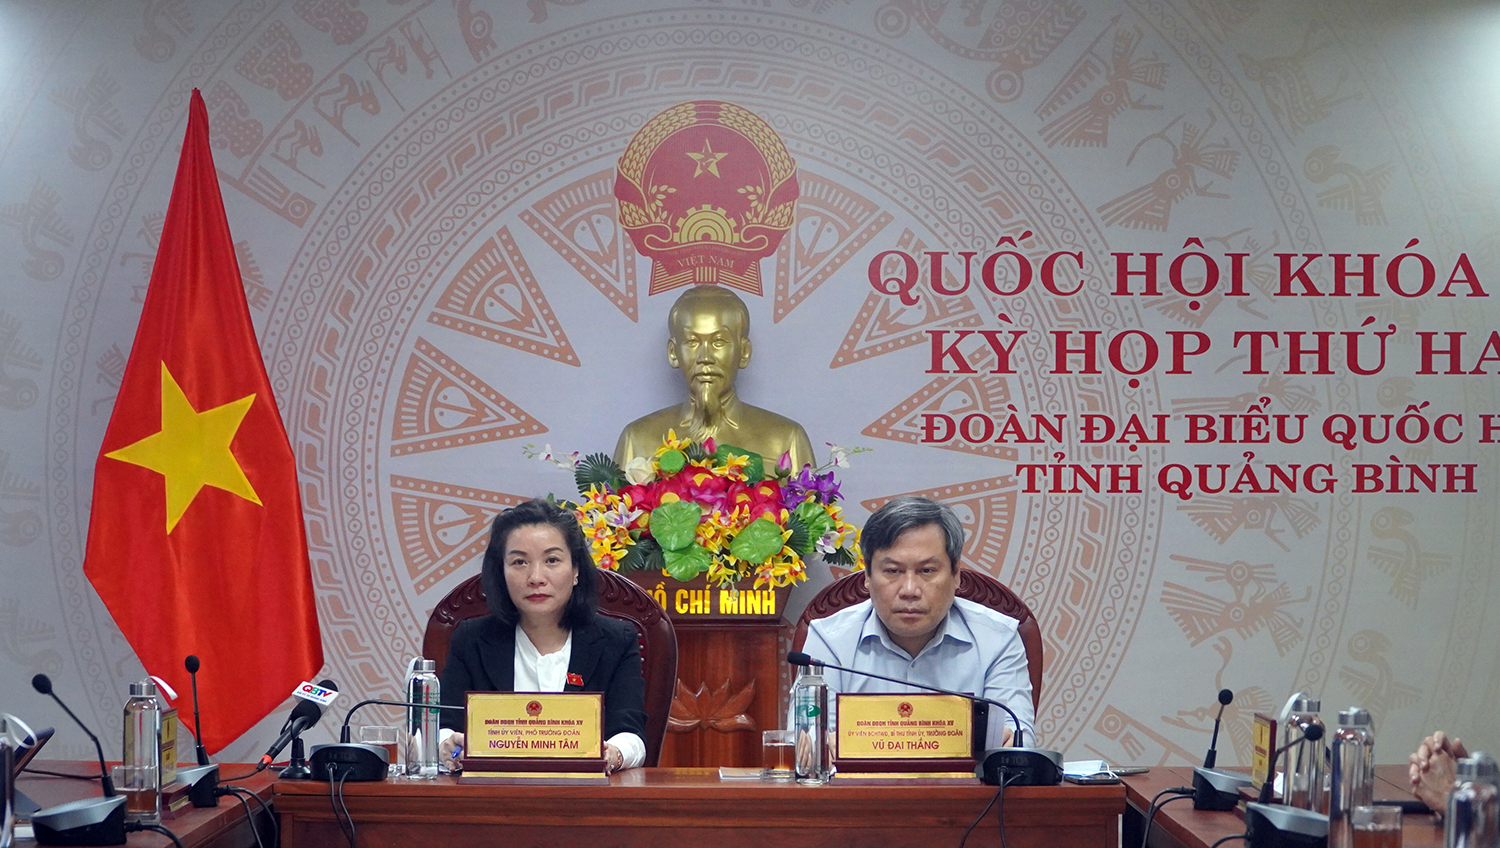 Đồng chí Bí thư Tỉnh ủy, Trưởng đoàn ĐBQH Vũ Đại Thắng và Phó trưởng đoàn ĐBQH Nguyễn Minh Tâm điều hành phiên thảo luận luận.